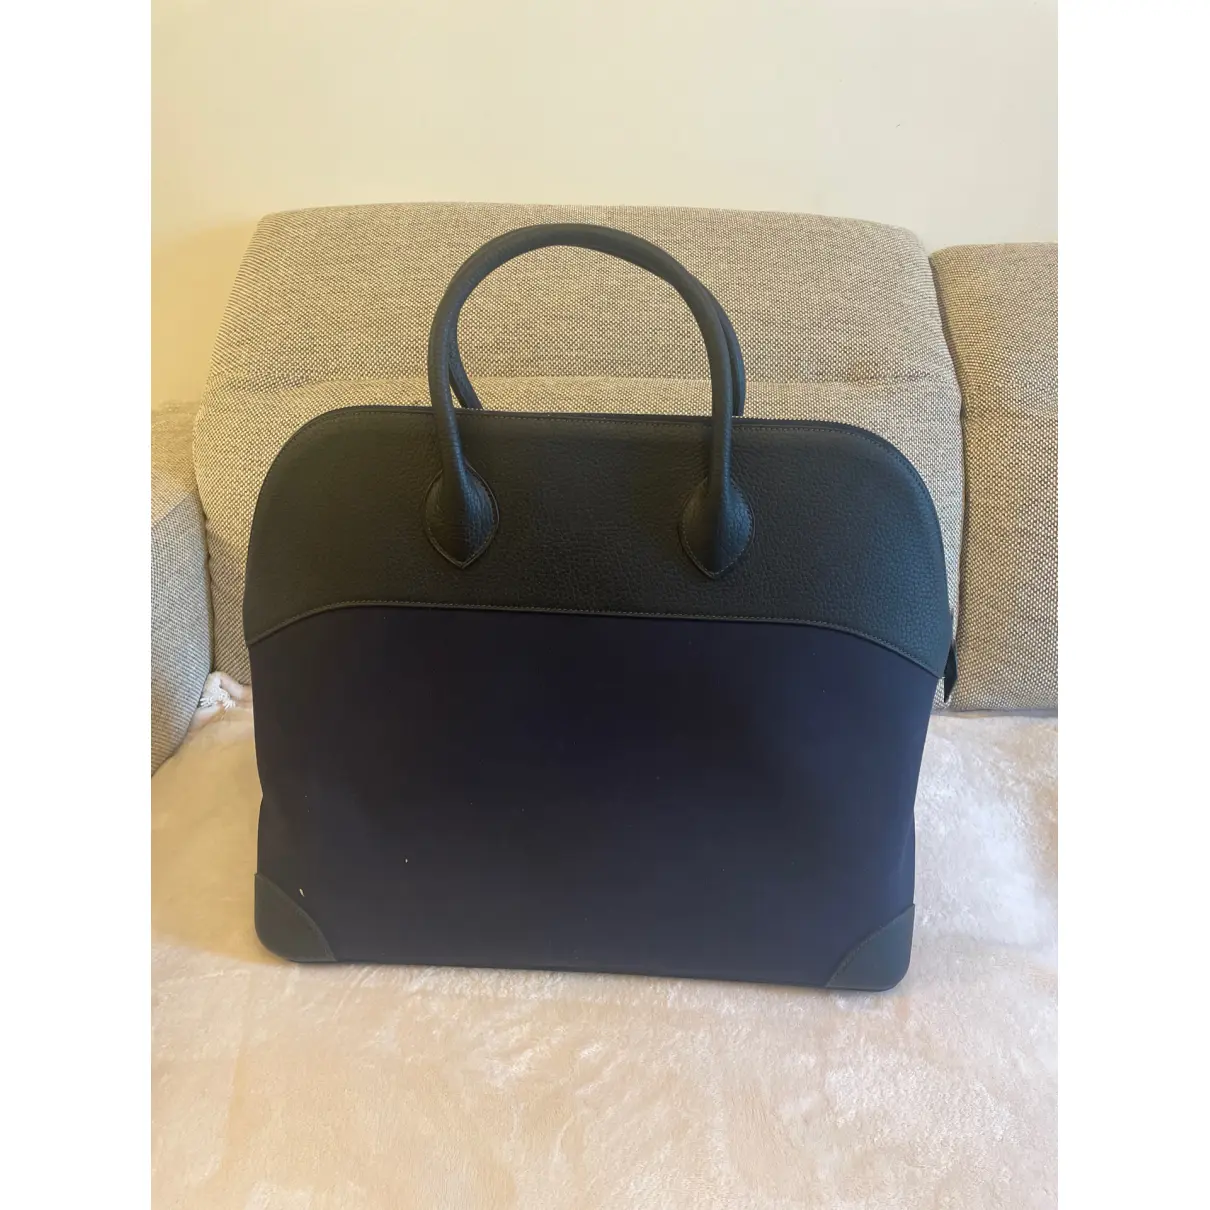 Buy Hermès Bolide leather travel bag online